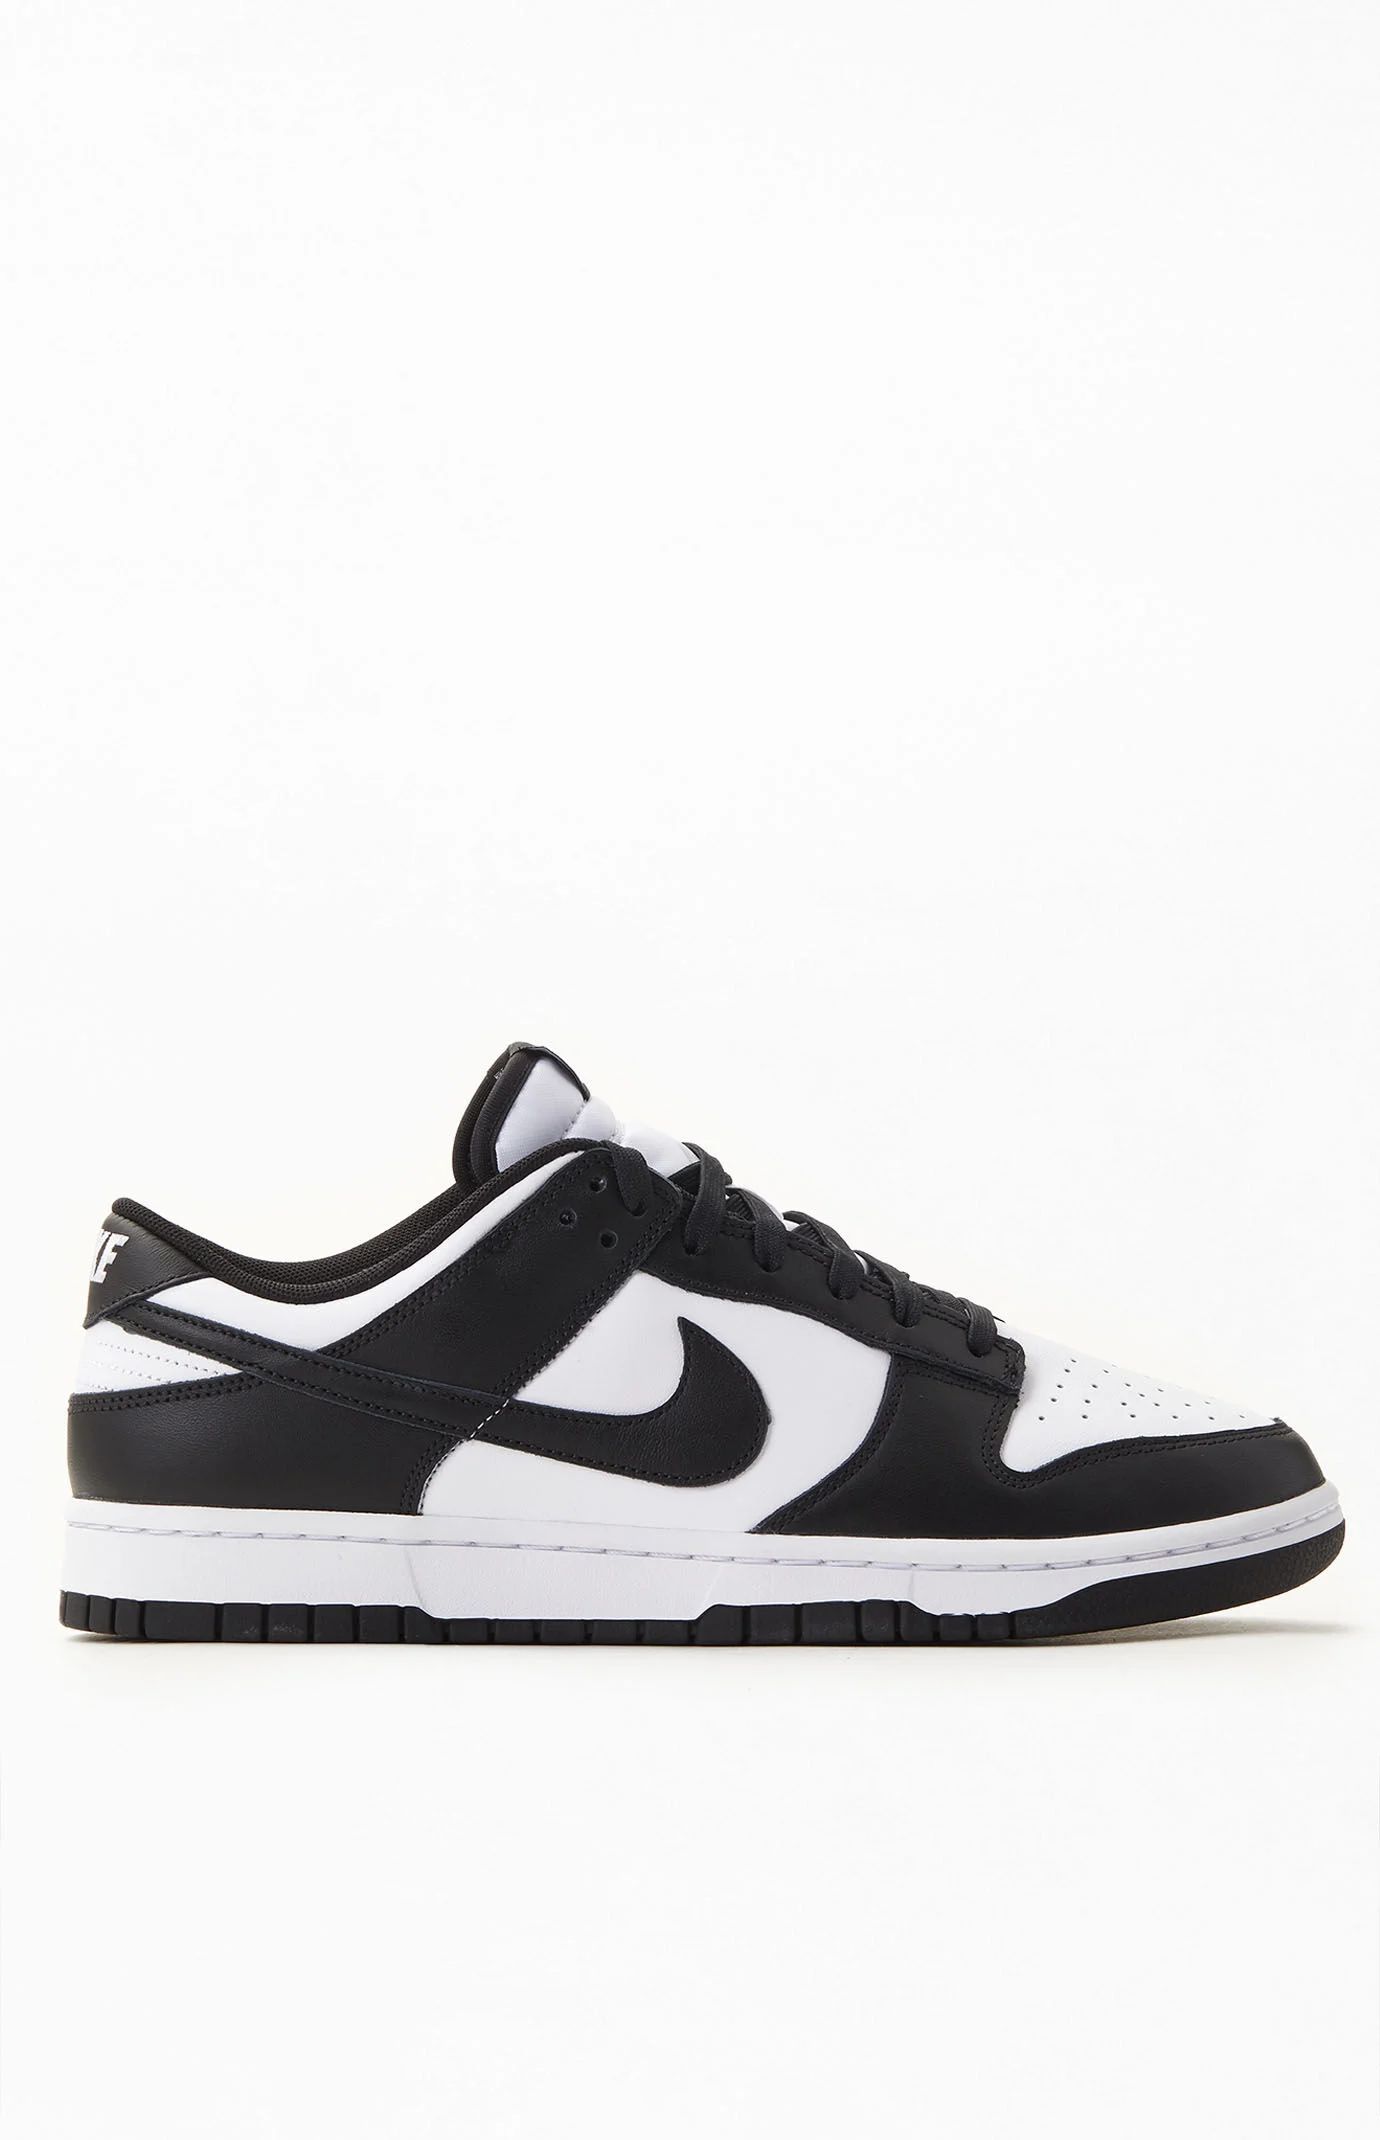 Nike Dunk Low Panda Shoes - Black/white size M10|W11.5 | PacSun